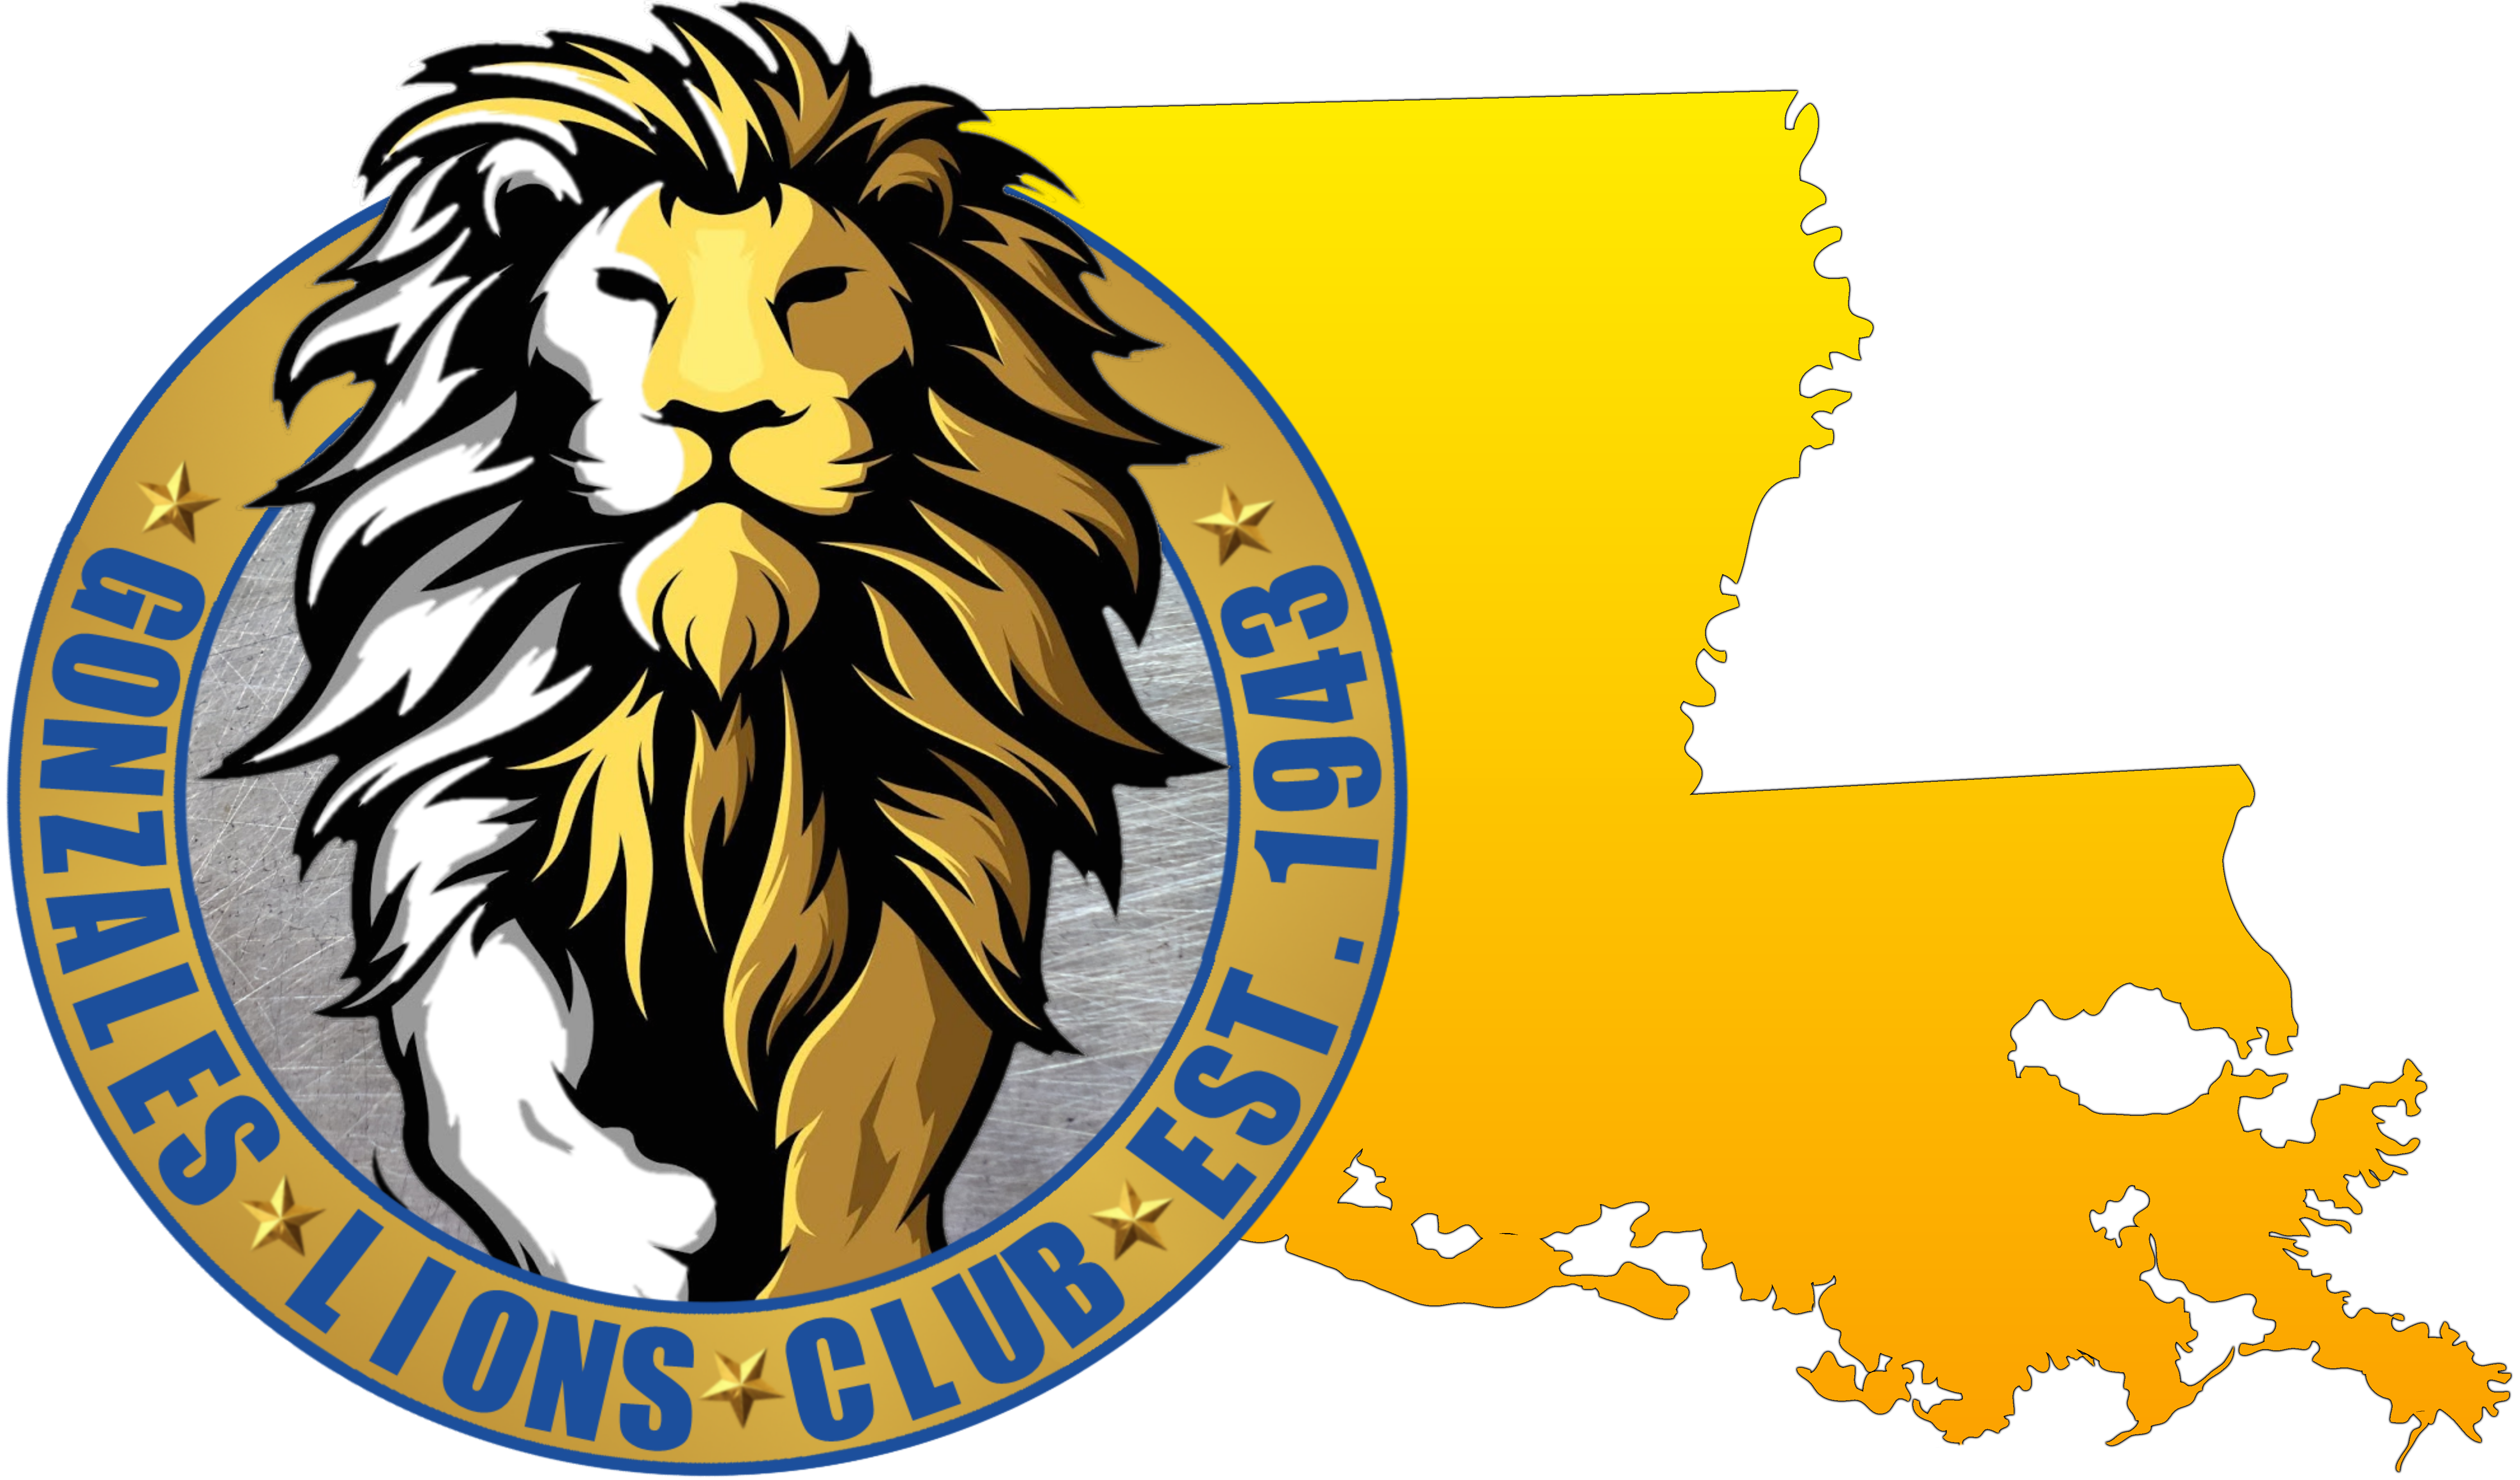 Gonzales Lions Club